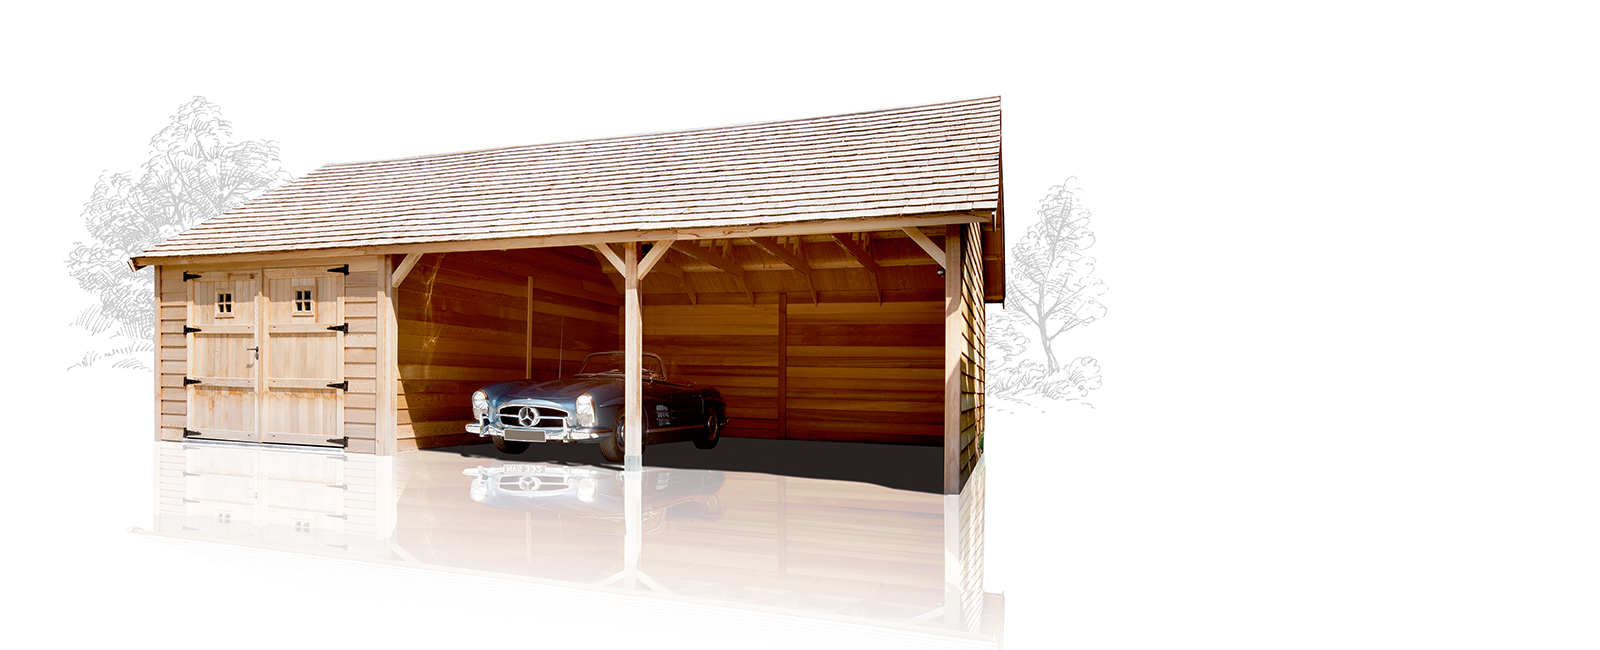 Onze garages bestaan in vier verschillende uitvoeringen: van Classic en Modern tot Cottage en Cubus.
Bekijk het volledige gamma.